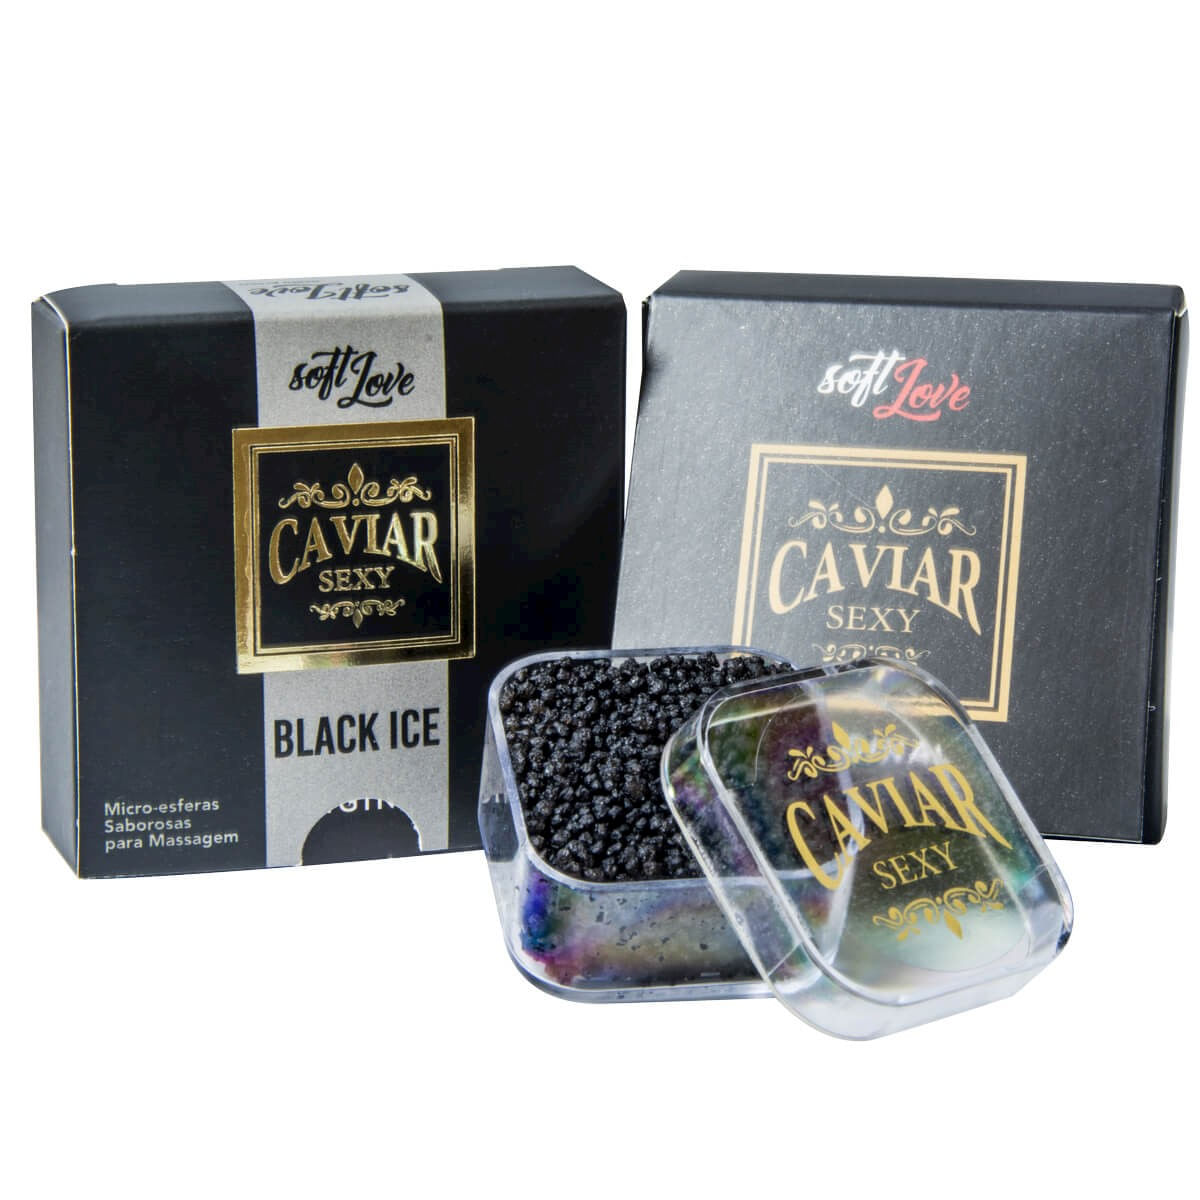 Caviar Sexy Black Ice Micro Esferas Saborosas para Massagem 14g Soft Love